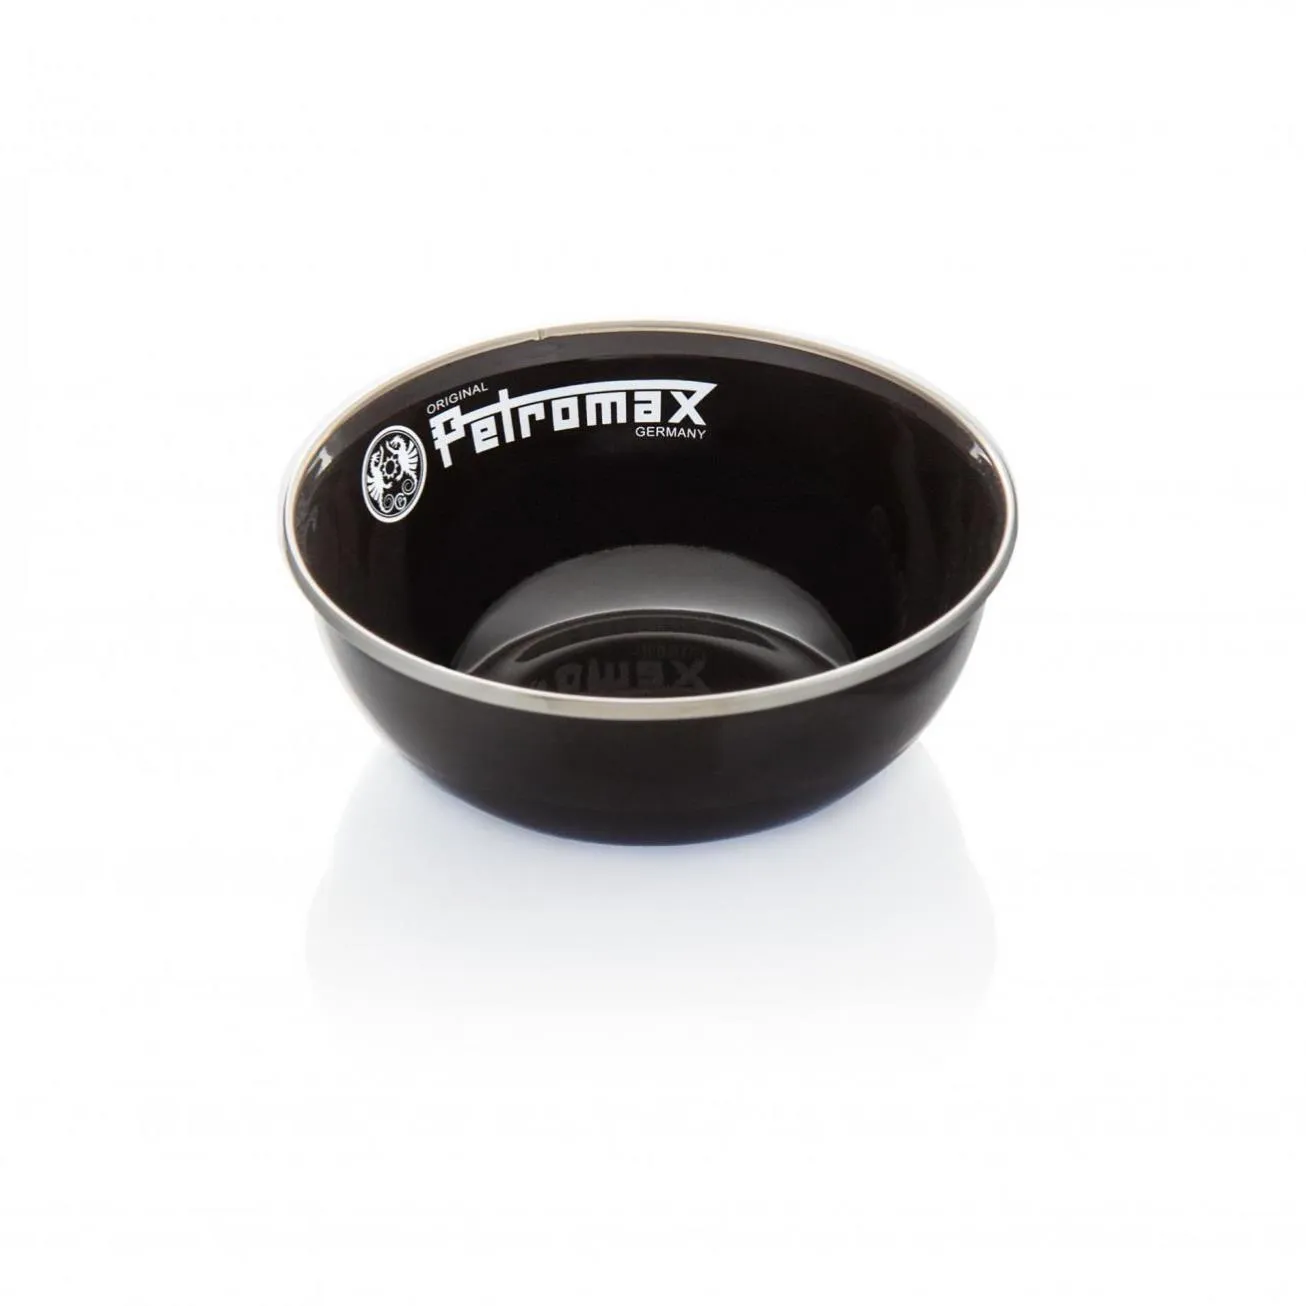 px-bowl-s-Petromax Emaille Schalen schwarz.jpg